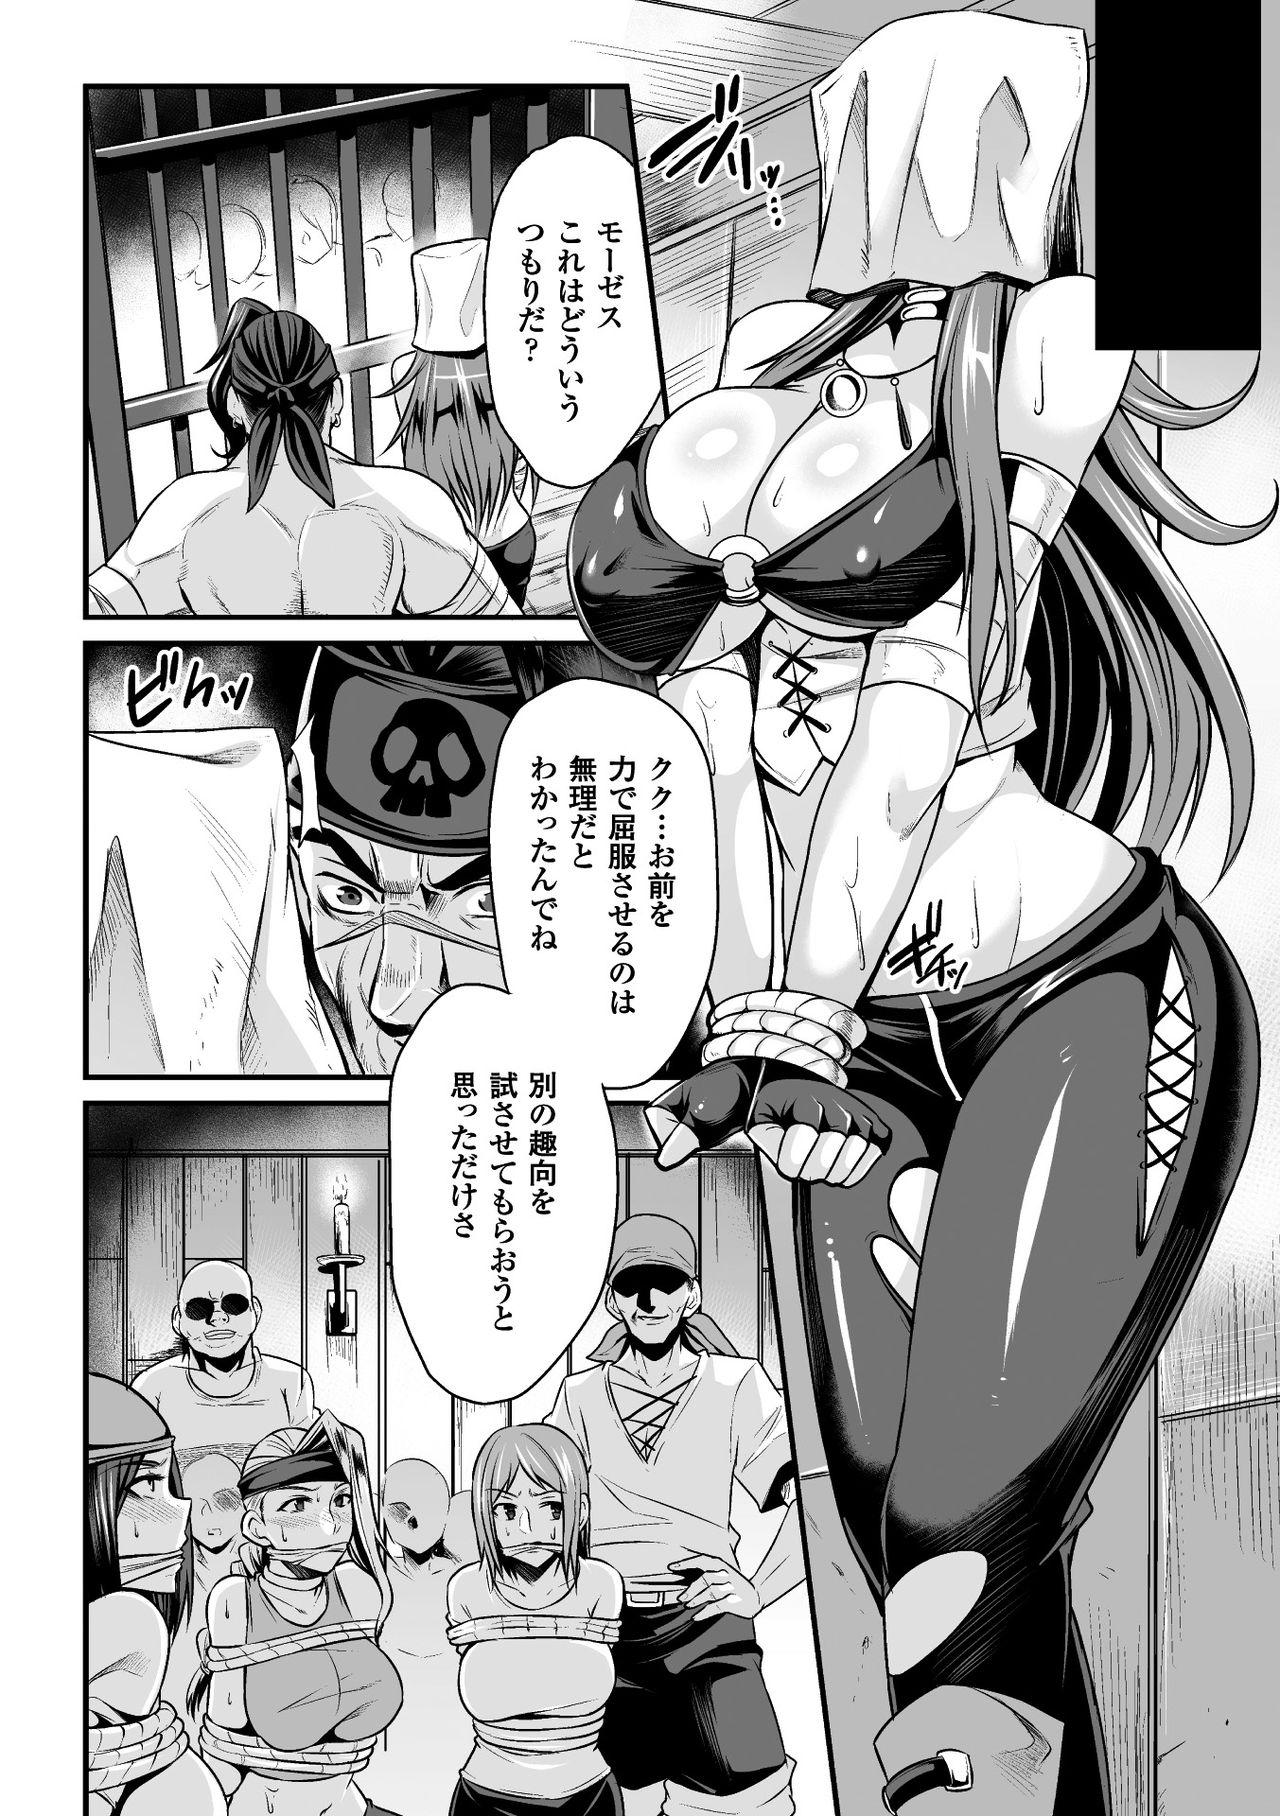 Deepthroat 2D Comic Magazine Fukuro o Kabuserareta Sugata de Naburareru Heroine-tachi Vol. 2 Strap On - Page 8